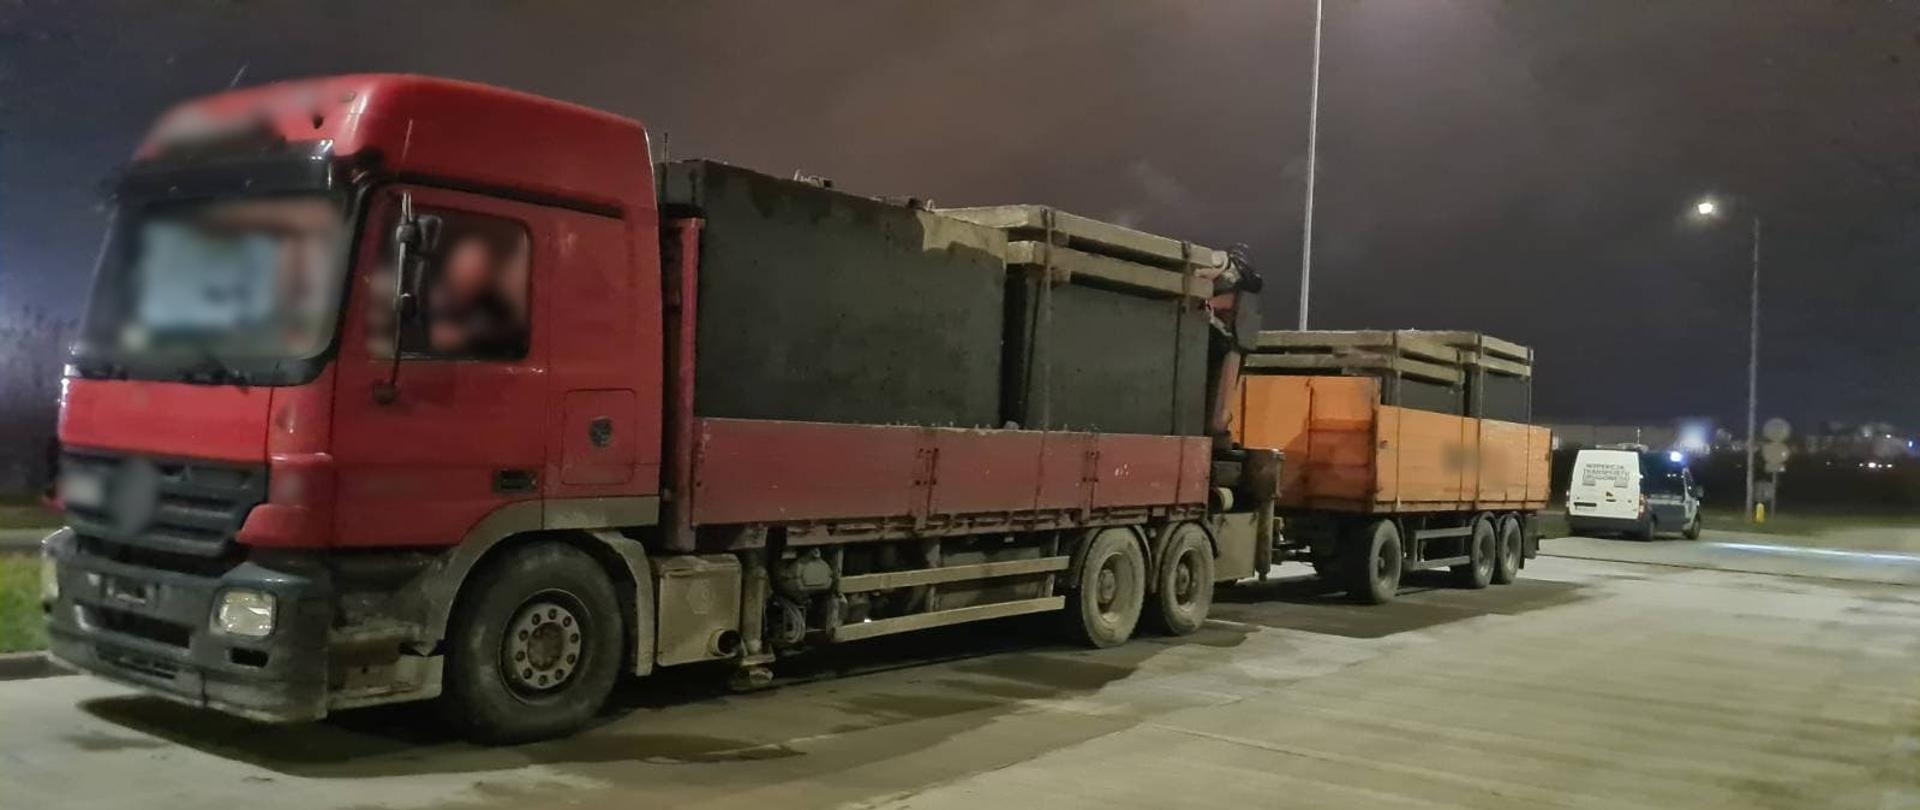 Niemal 71 ton zamiast dopuszczalnych 40 ważył zespół pojazdów z betonowymi szambami i pokrywami. Nienormatywną ciężarówkę zatrzymał do kontroli patrol Inspekcji Transportu Drogowego na terenie Radomia.